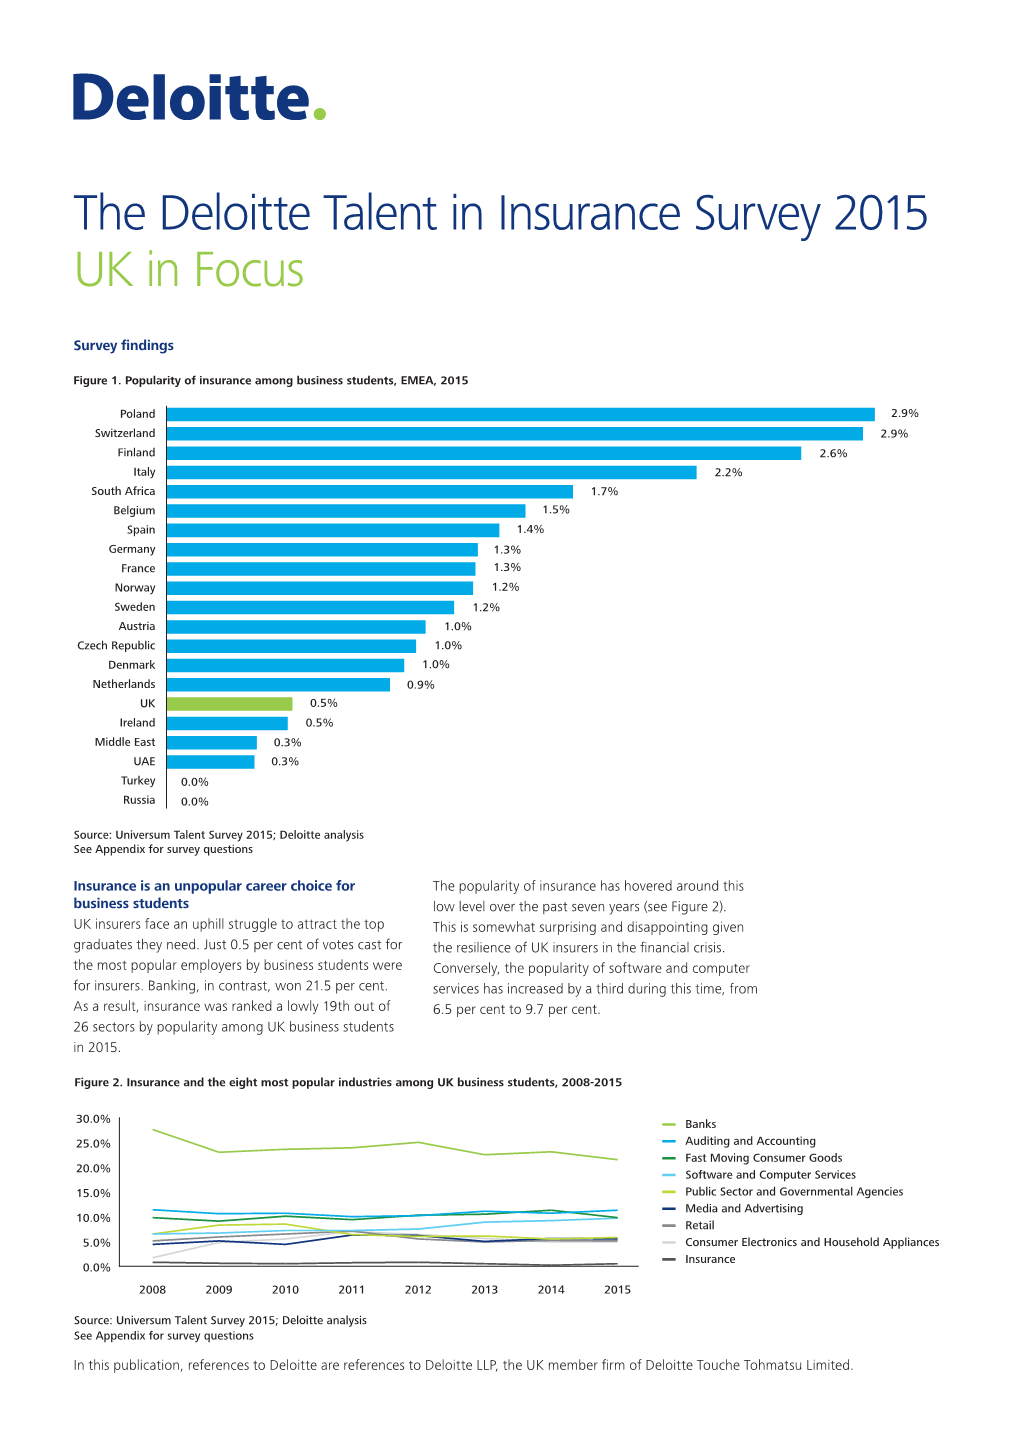 The Deloitte Talent in Insurance Survey 2015 UK in Focus